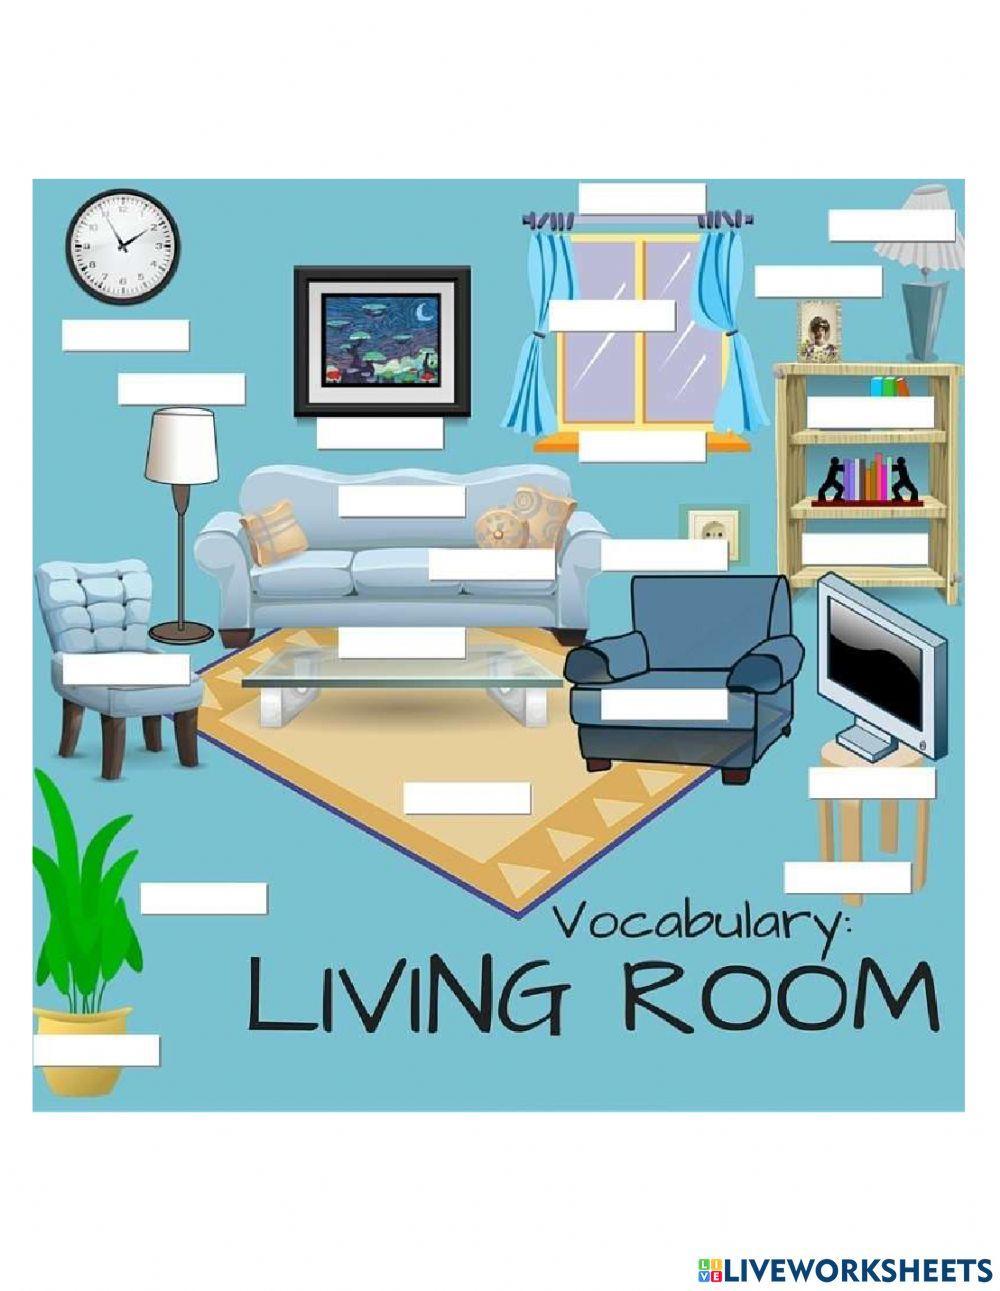 Living room vocab